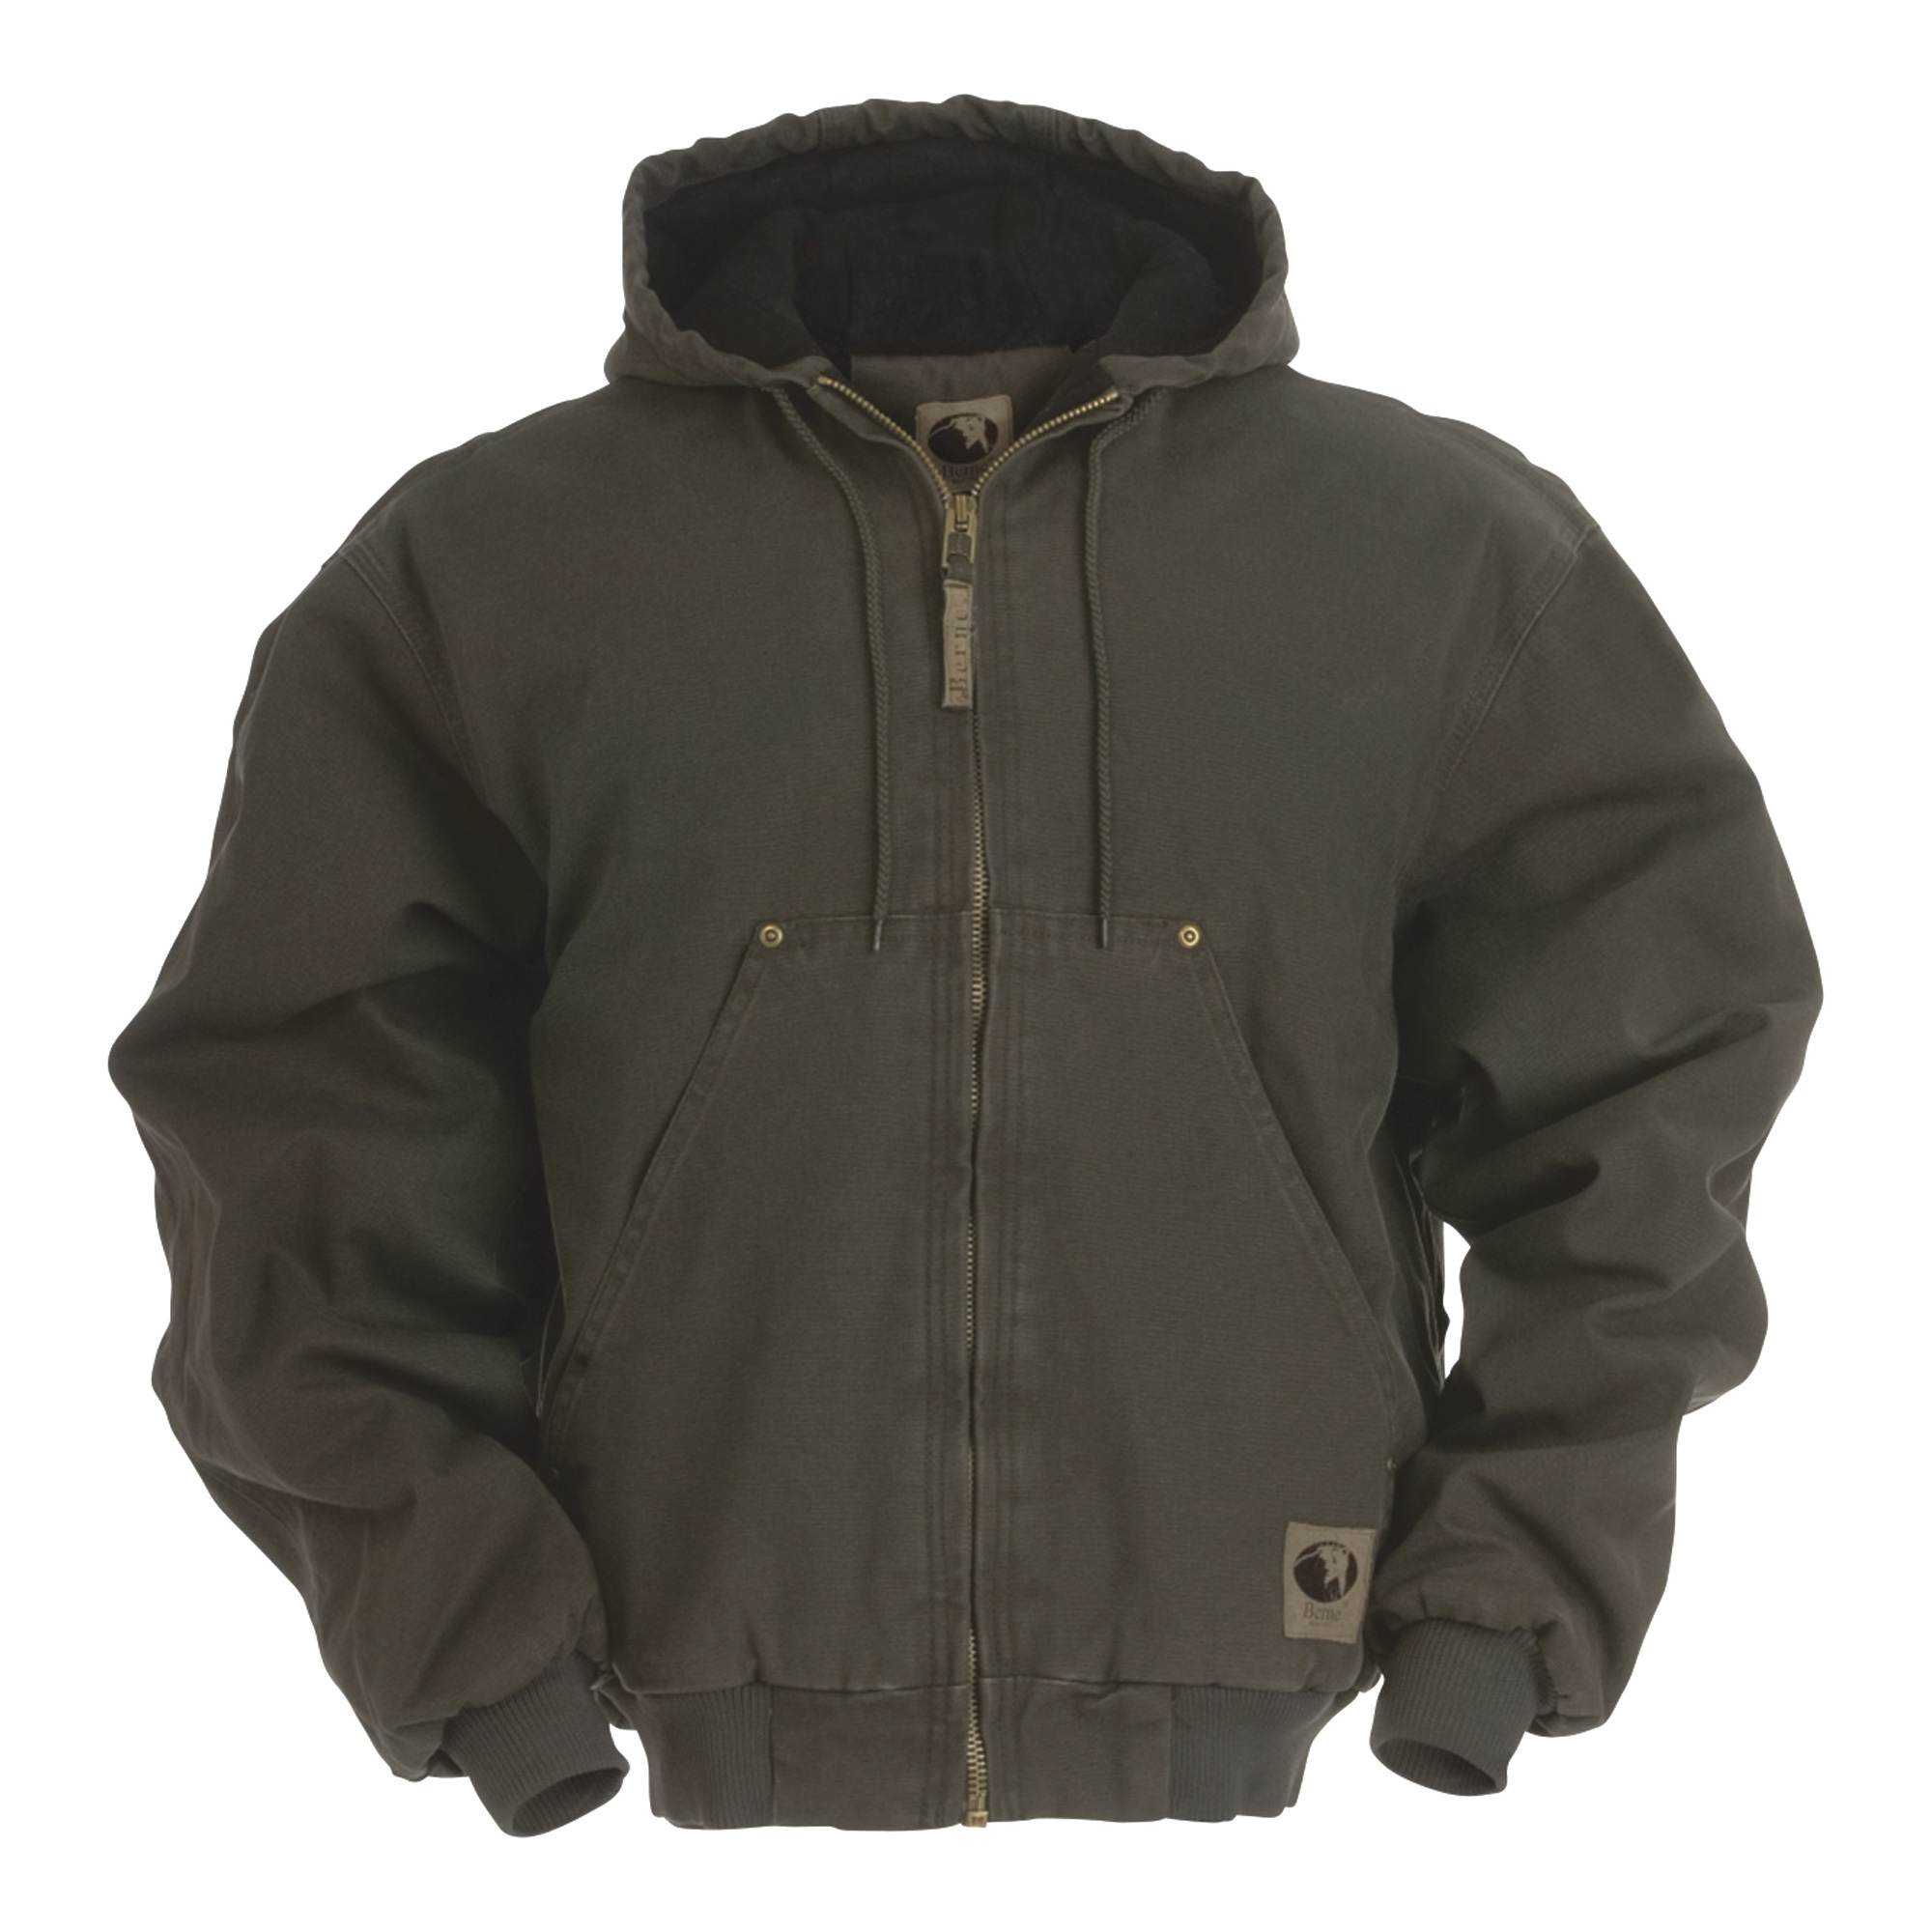 Berne Men's Original Washed Hooded Jacket â Quilt Lined, Olive, XL, Model HJ375ODR480